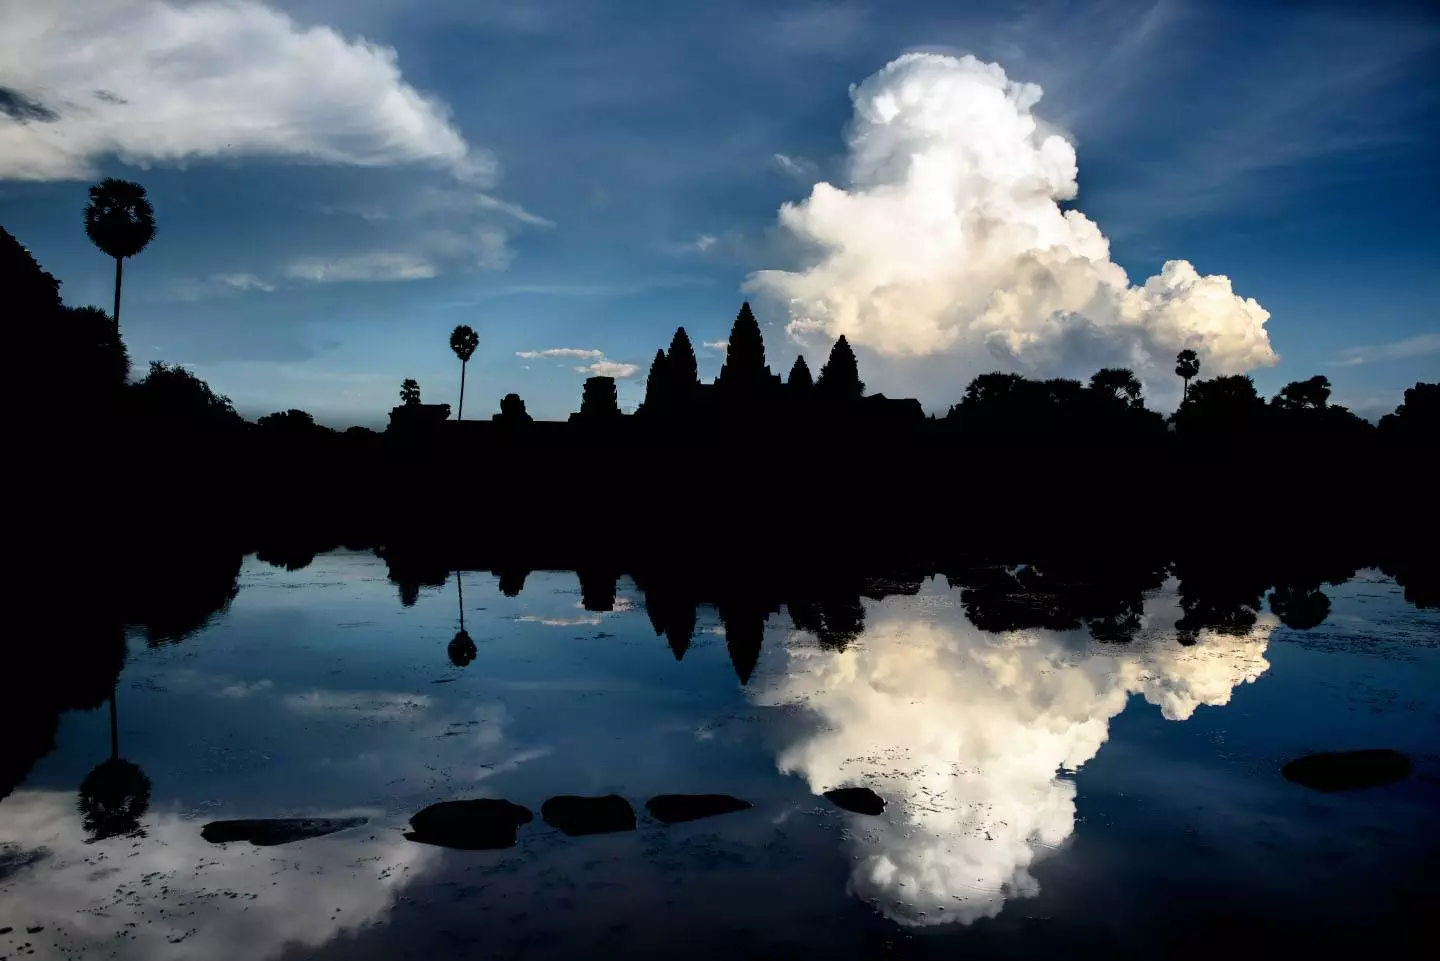 Templo de Angkor Wat al amanecer, Templos de Angkor, Siem Reap, Camboya